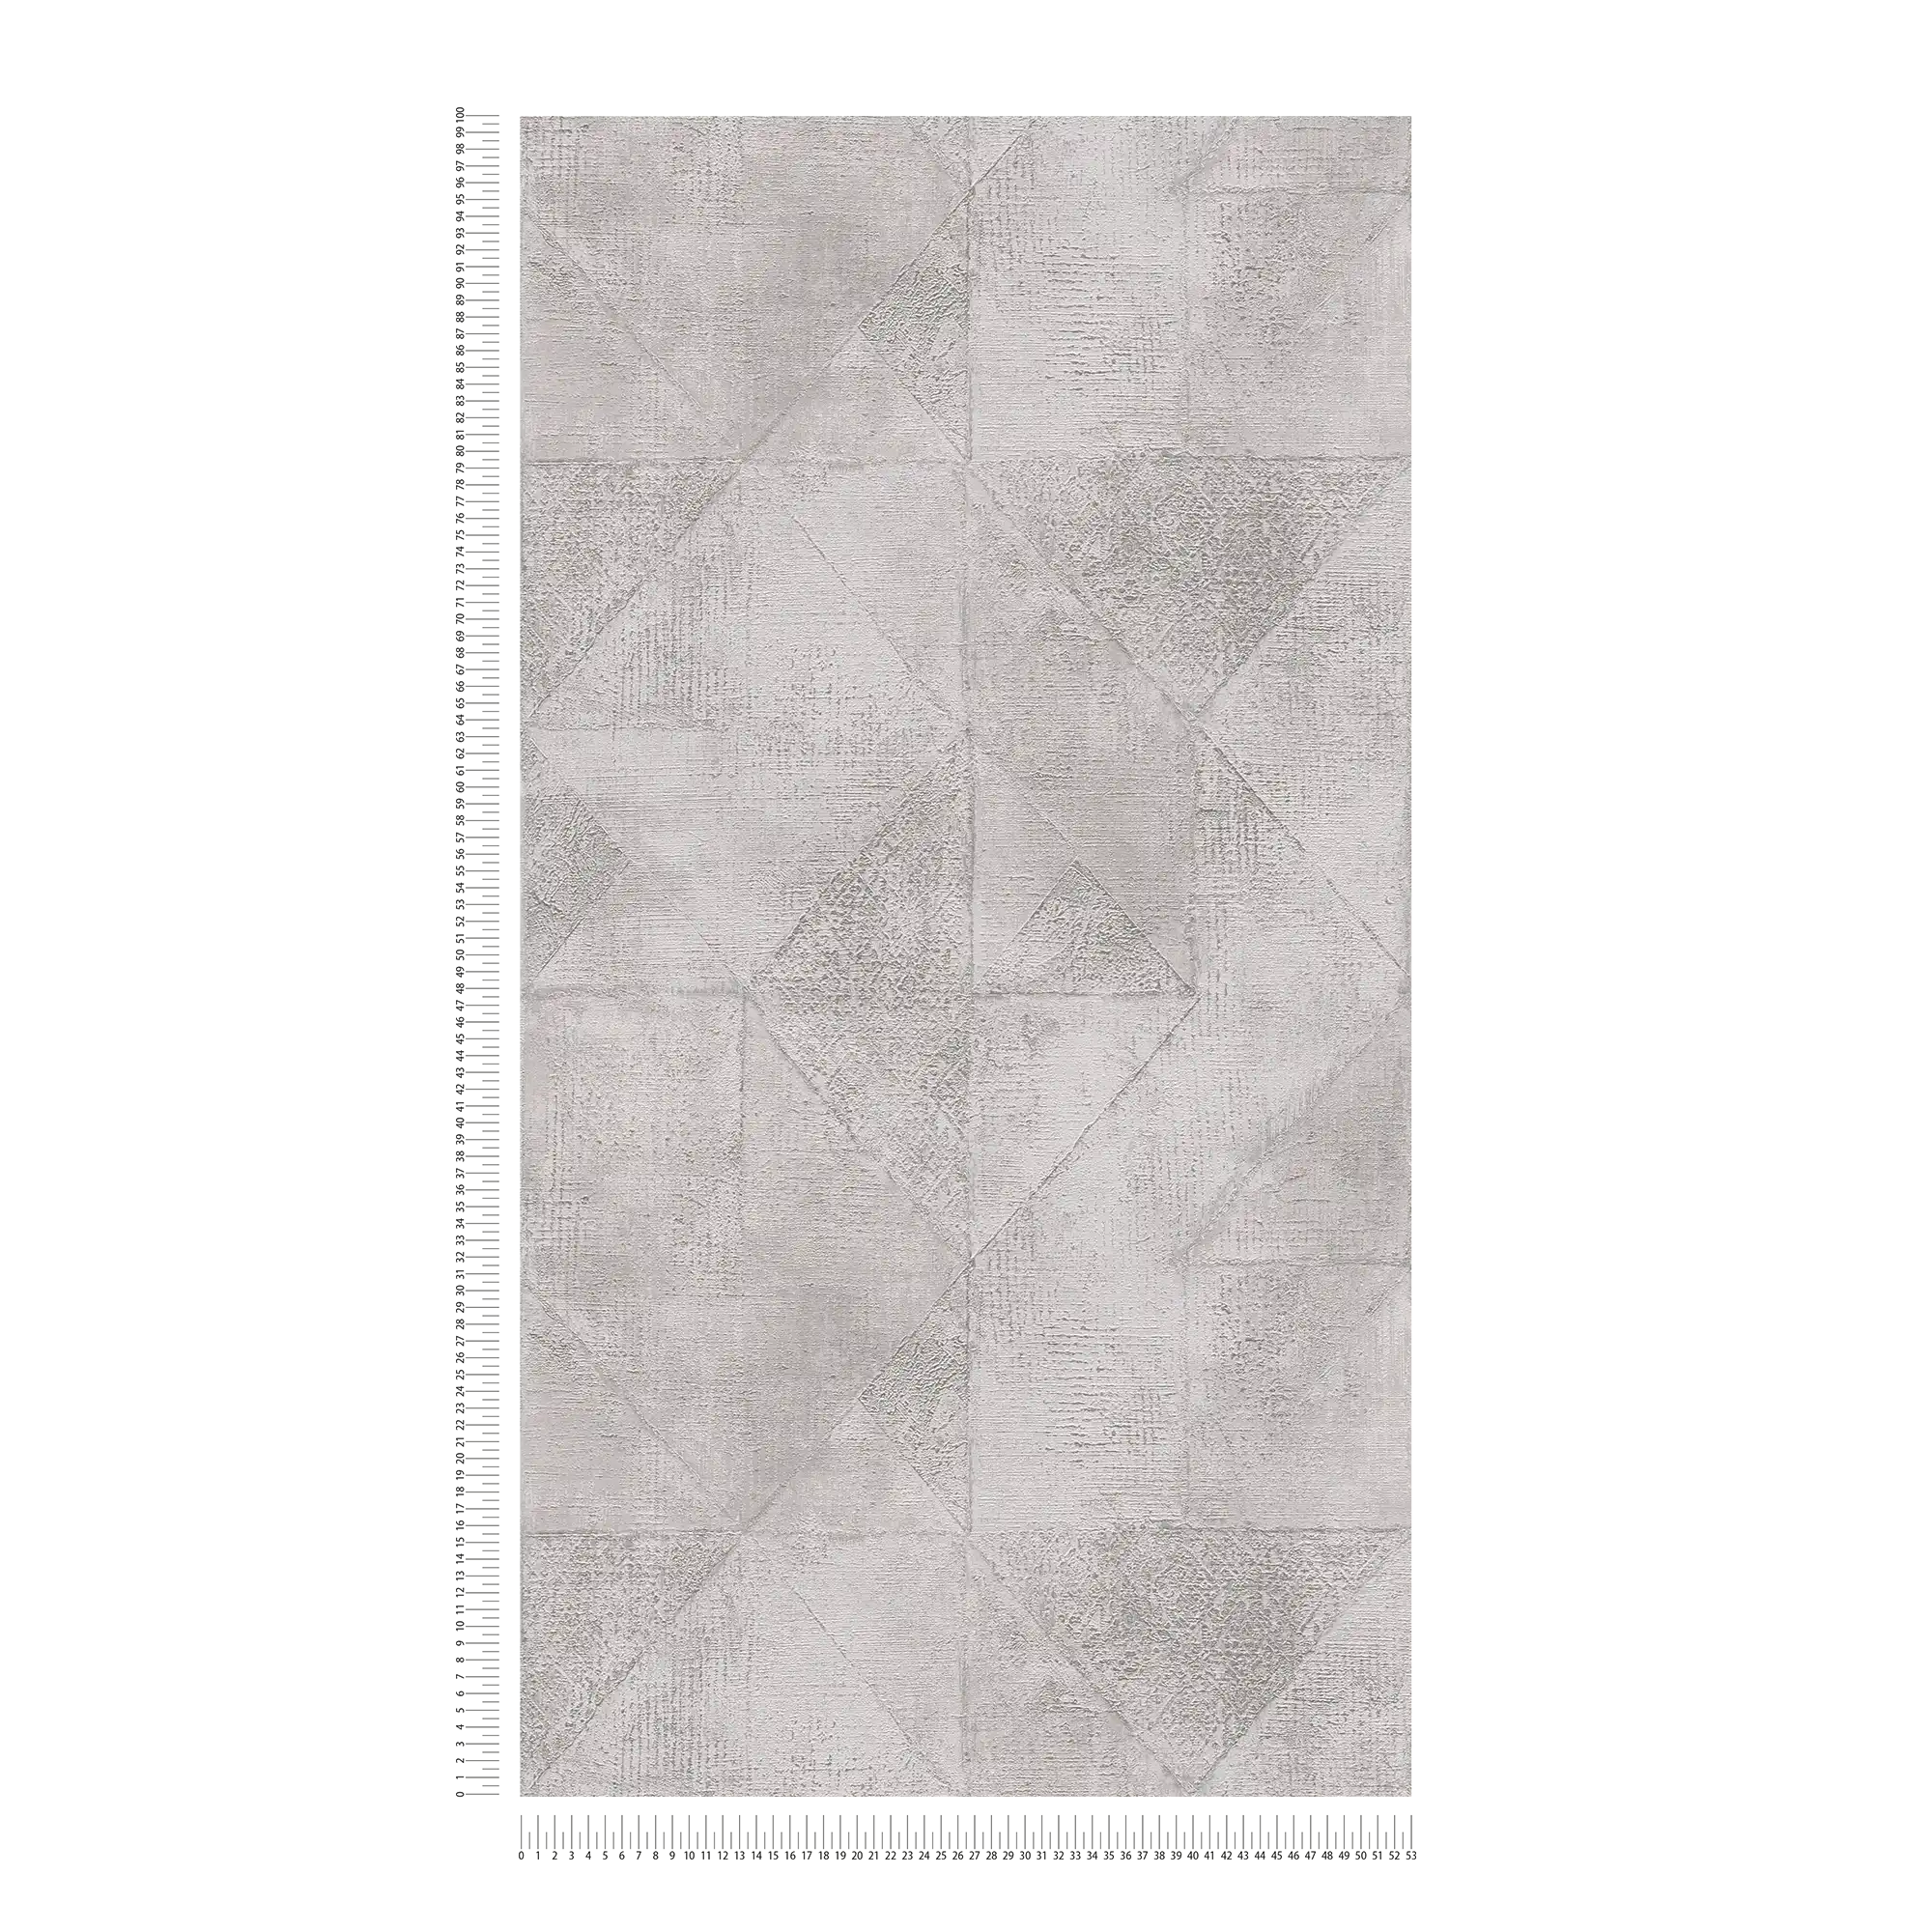             Tapete mit Grafik Dreieck-Muster metallic glänzend strukturiert – Grau, Silber
        